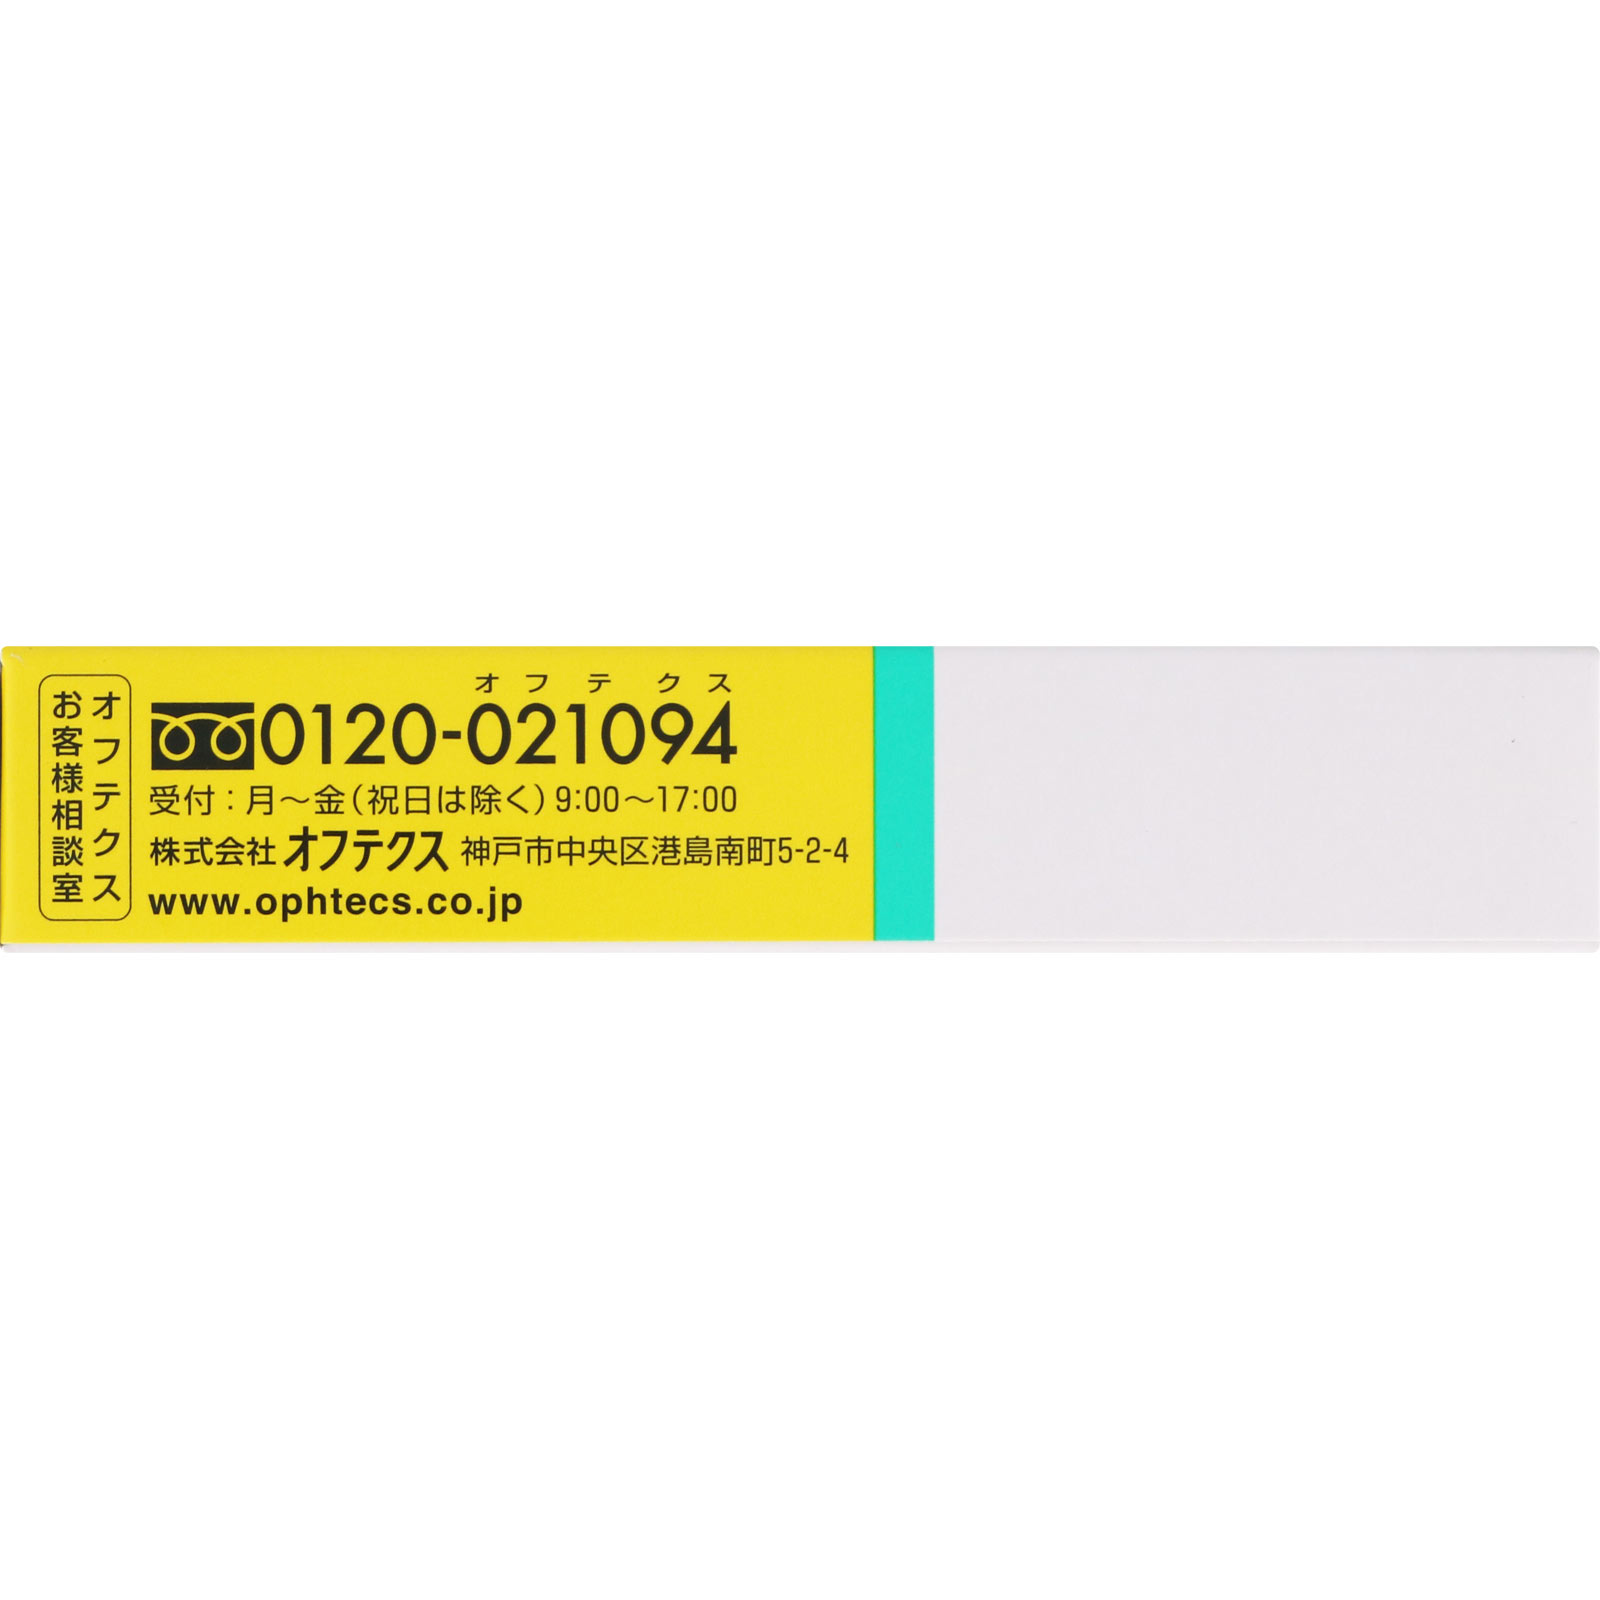 バイオクレン アクティバタブレット ミニ 10錠: 医薬品・衛生用品 Tomod's ONLINE SHOP